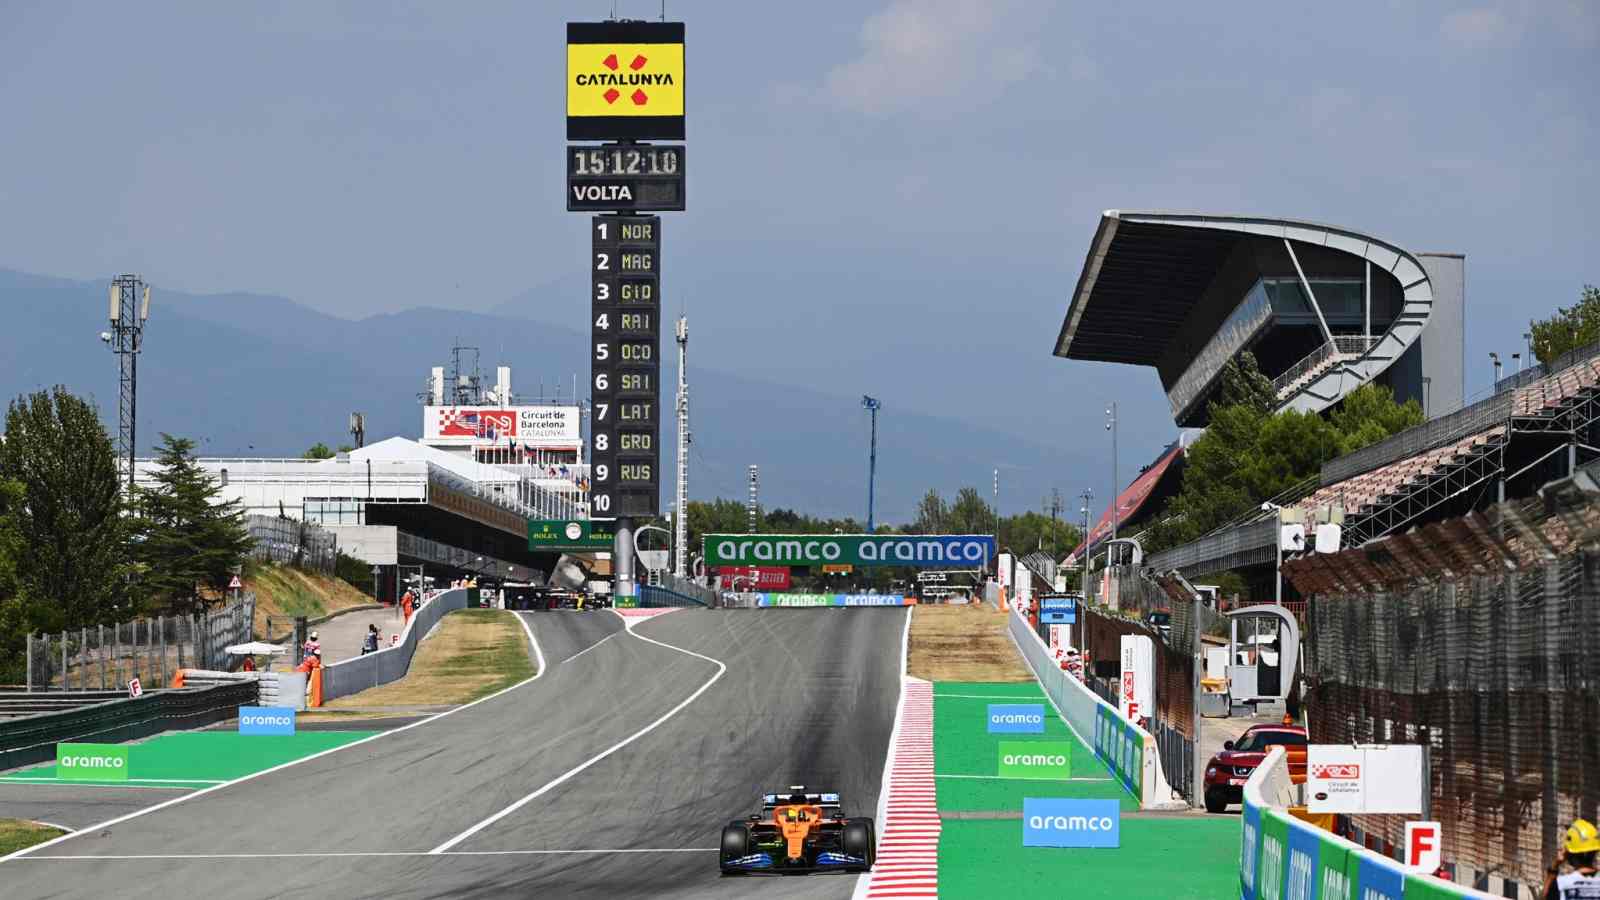 Circuito da Catalunha é familiar para todos os pilotos do grid, pois é usado na pré-temporada